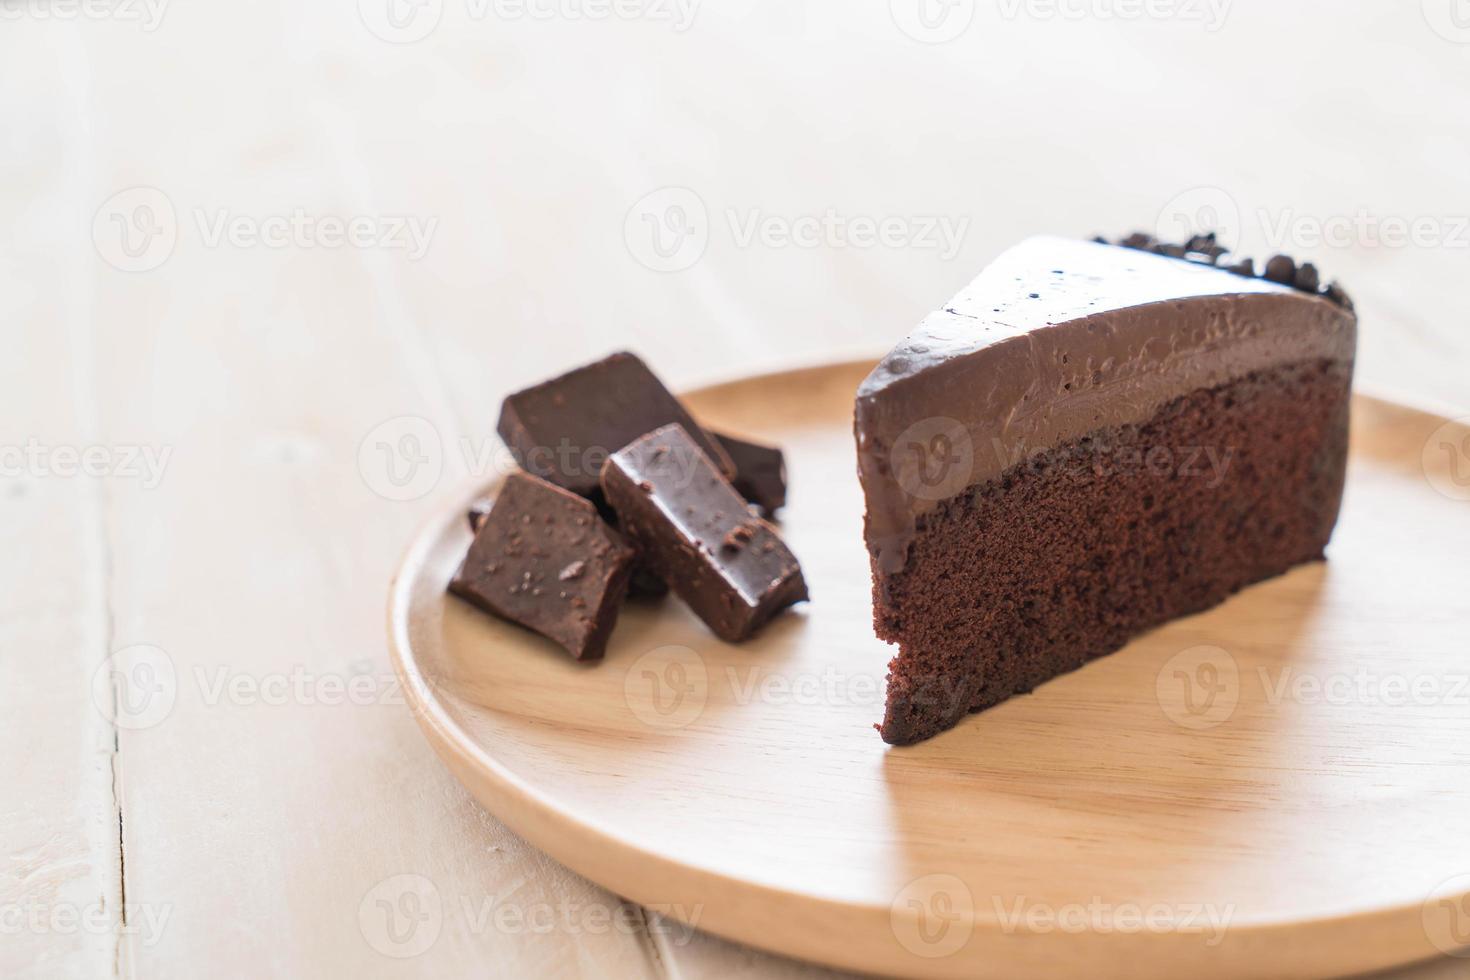 gâteau au chocolat sur plaque de bois photo